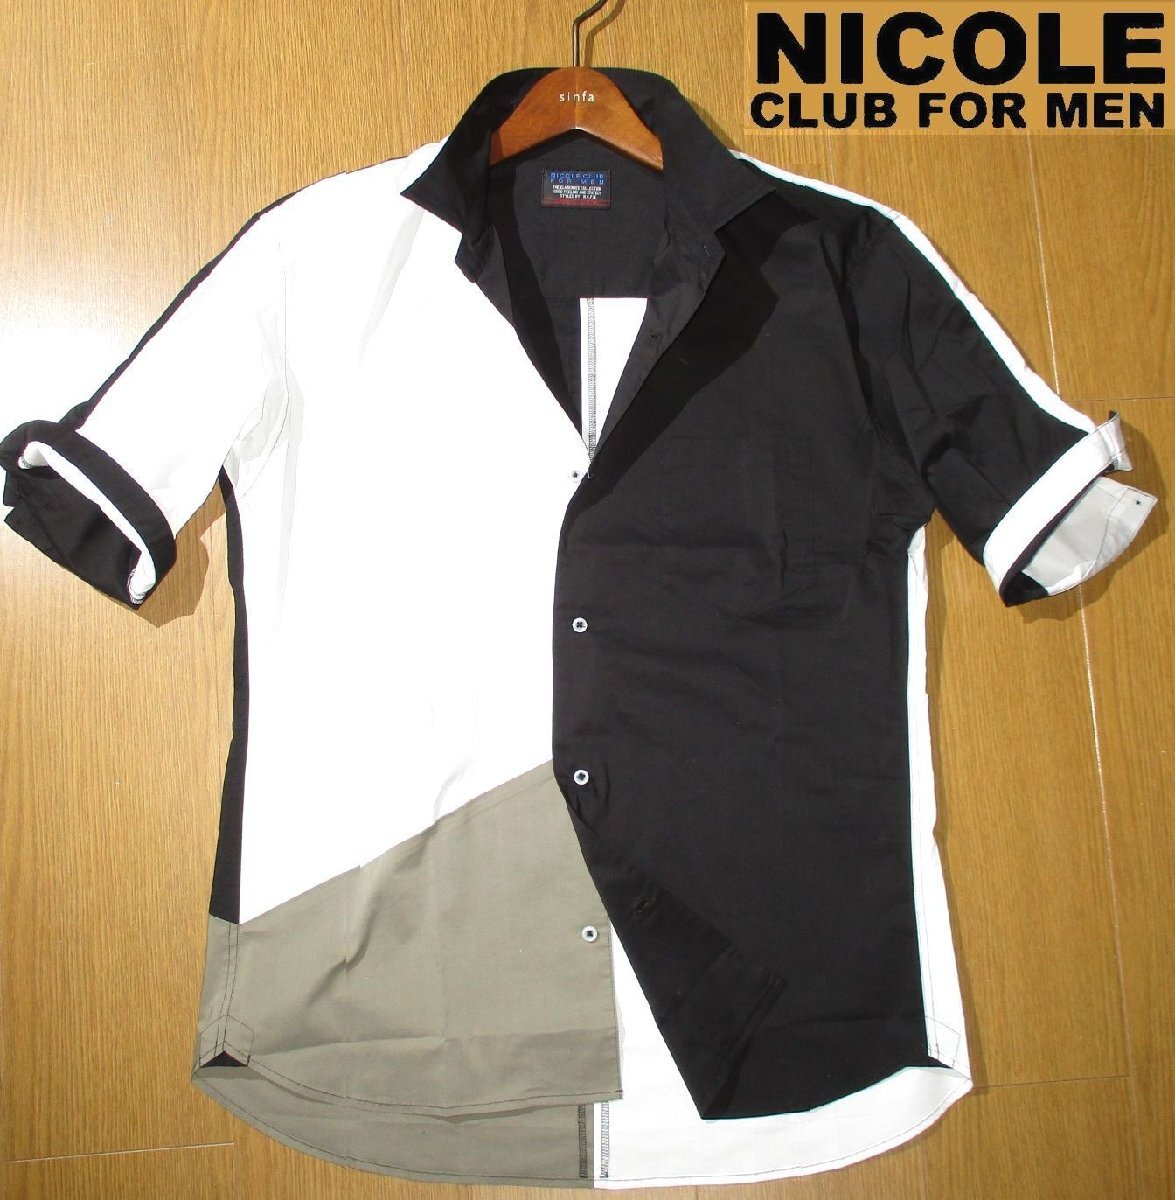  новый товар весна лето L V Nicole NICOLE CLUB FOR MEN V 5 минут рукав рубашка мужской чёрный белый переключатель . дизайн мужской MENS 48